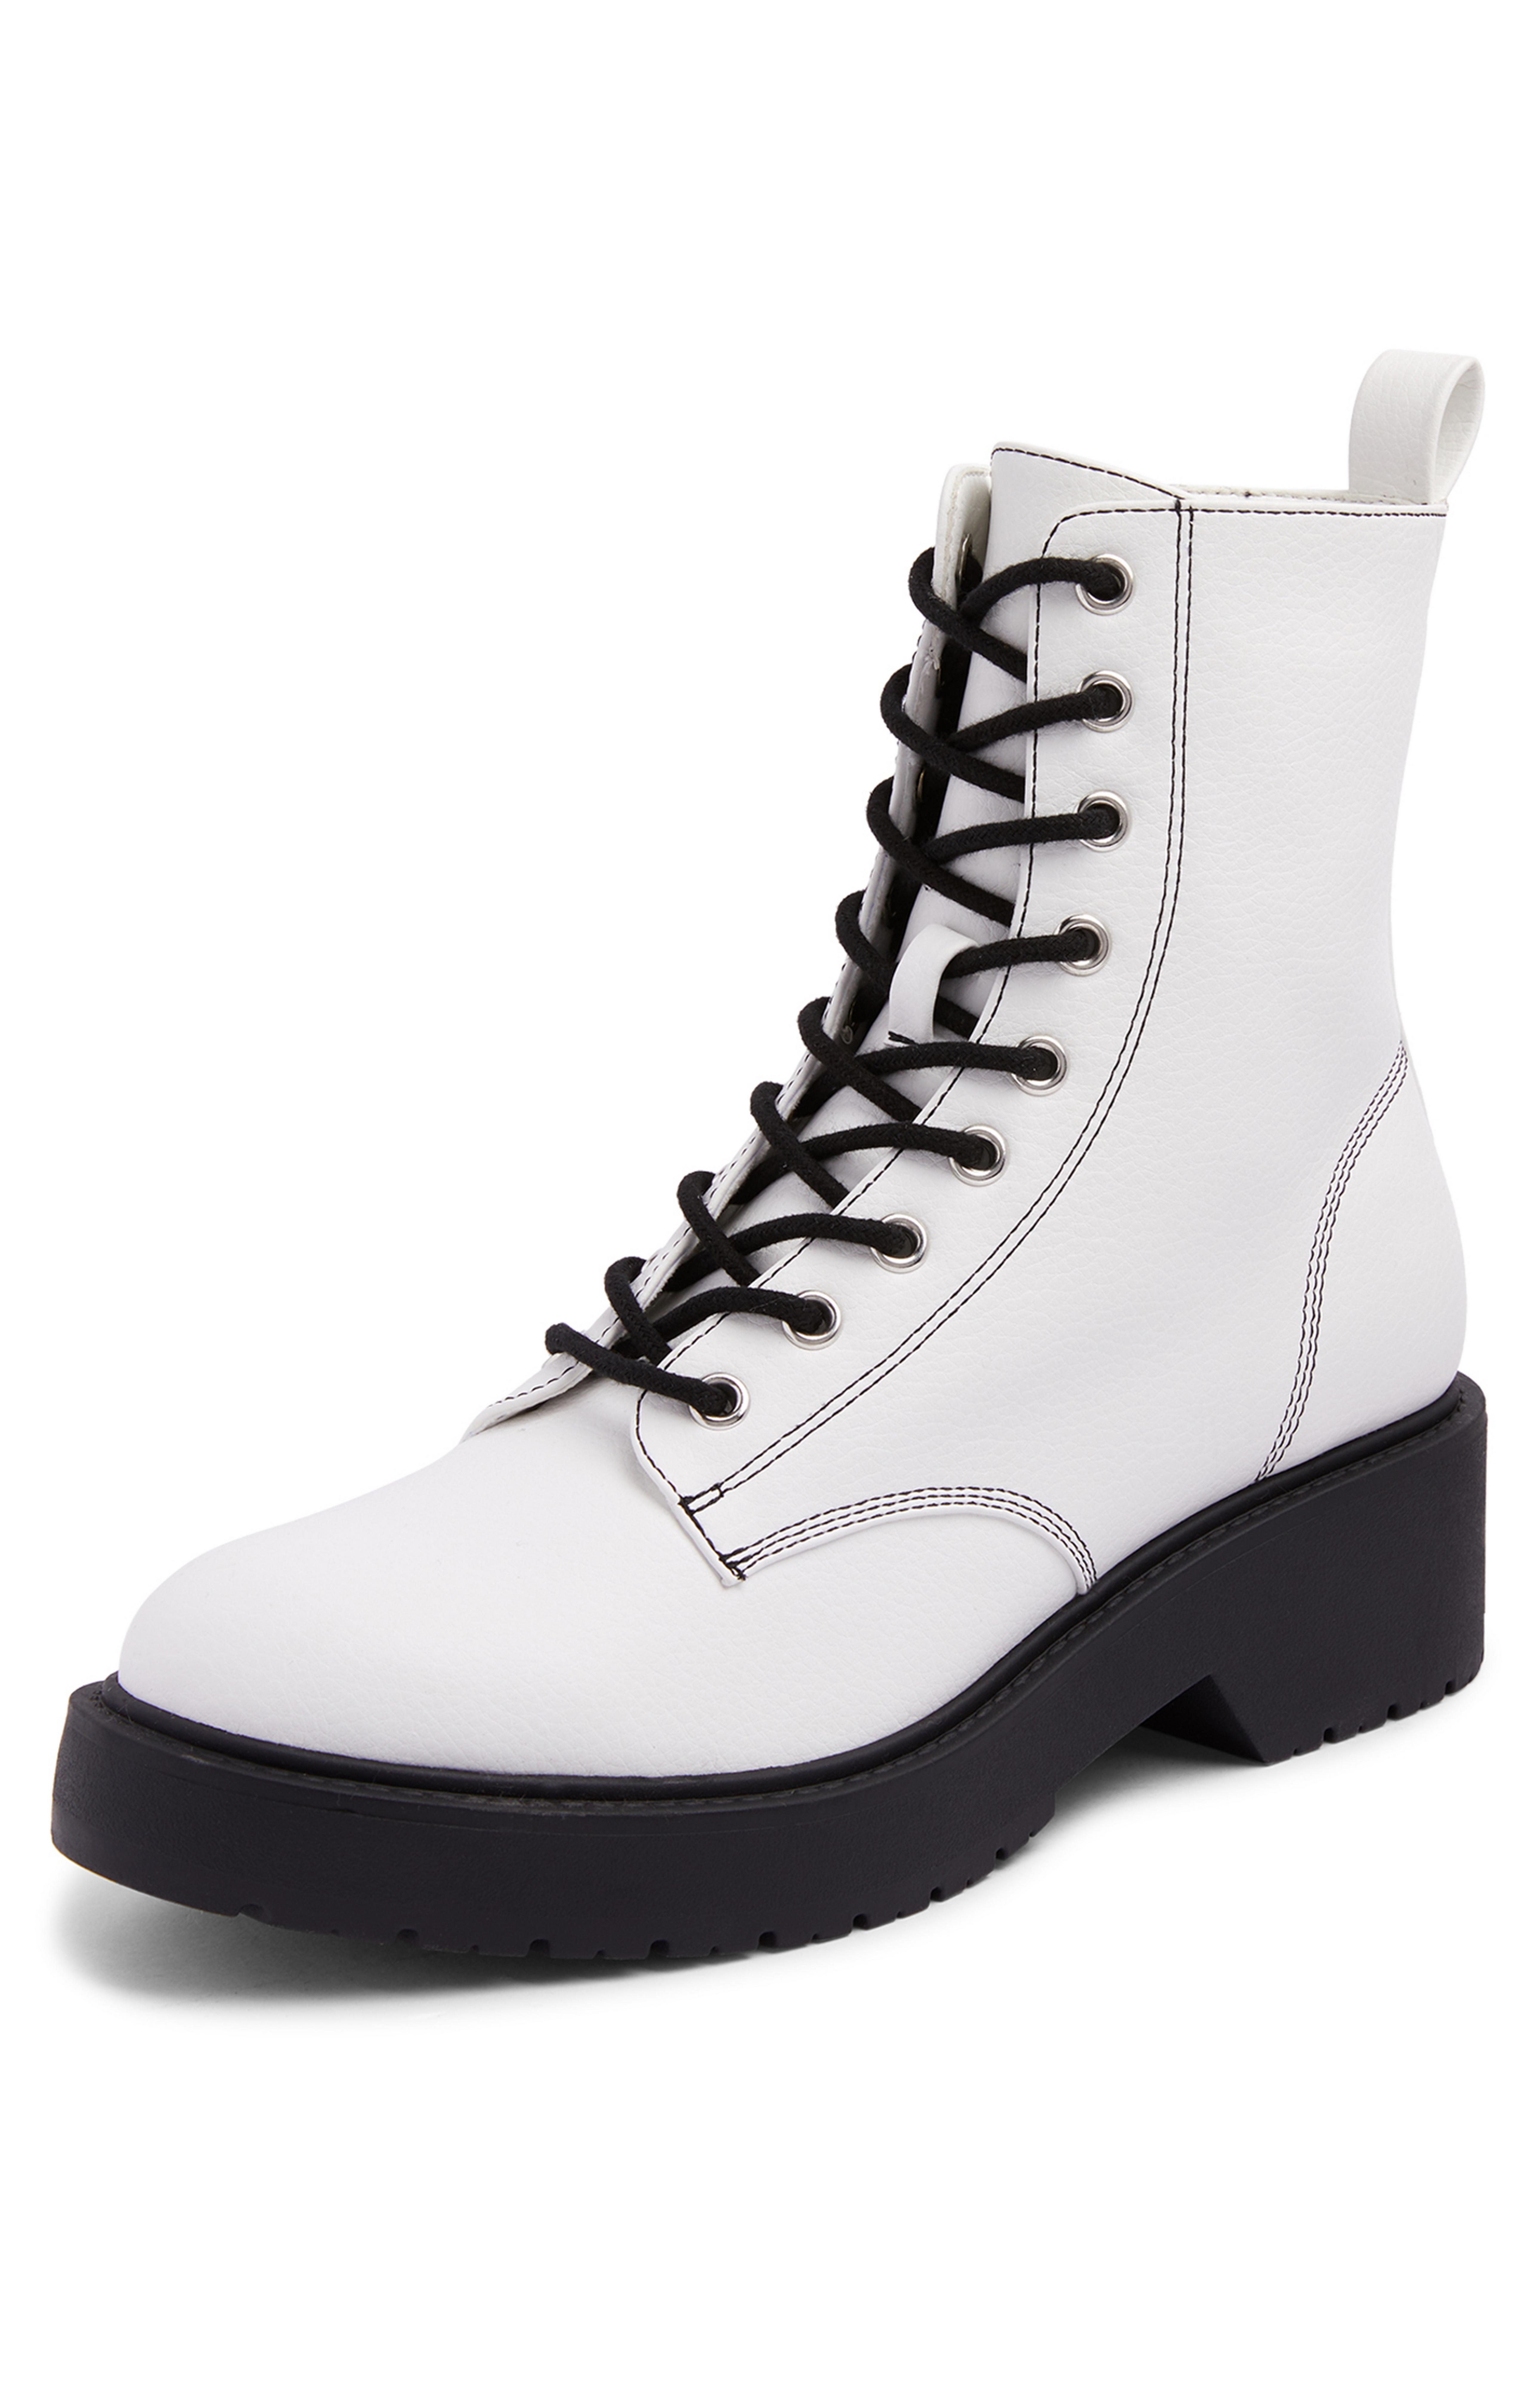 Botines blancos con cordones en contraste y suela gruesa | Botas para mujer | Zapatos y botas para mujer | Nuestra línea de moda femenina | Todos los productos Primark | Primark